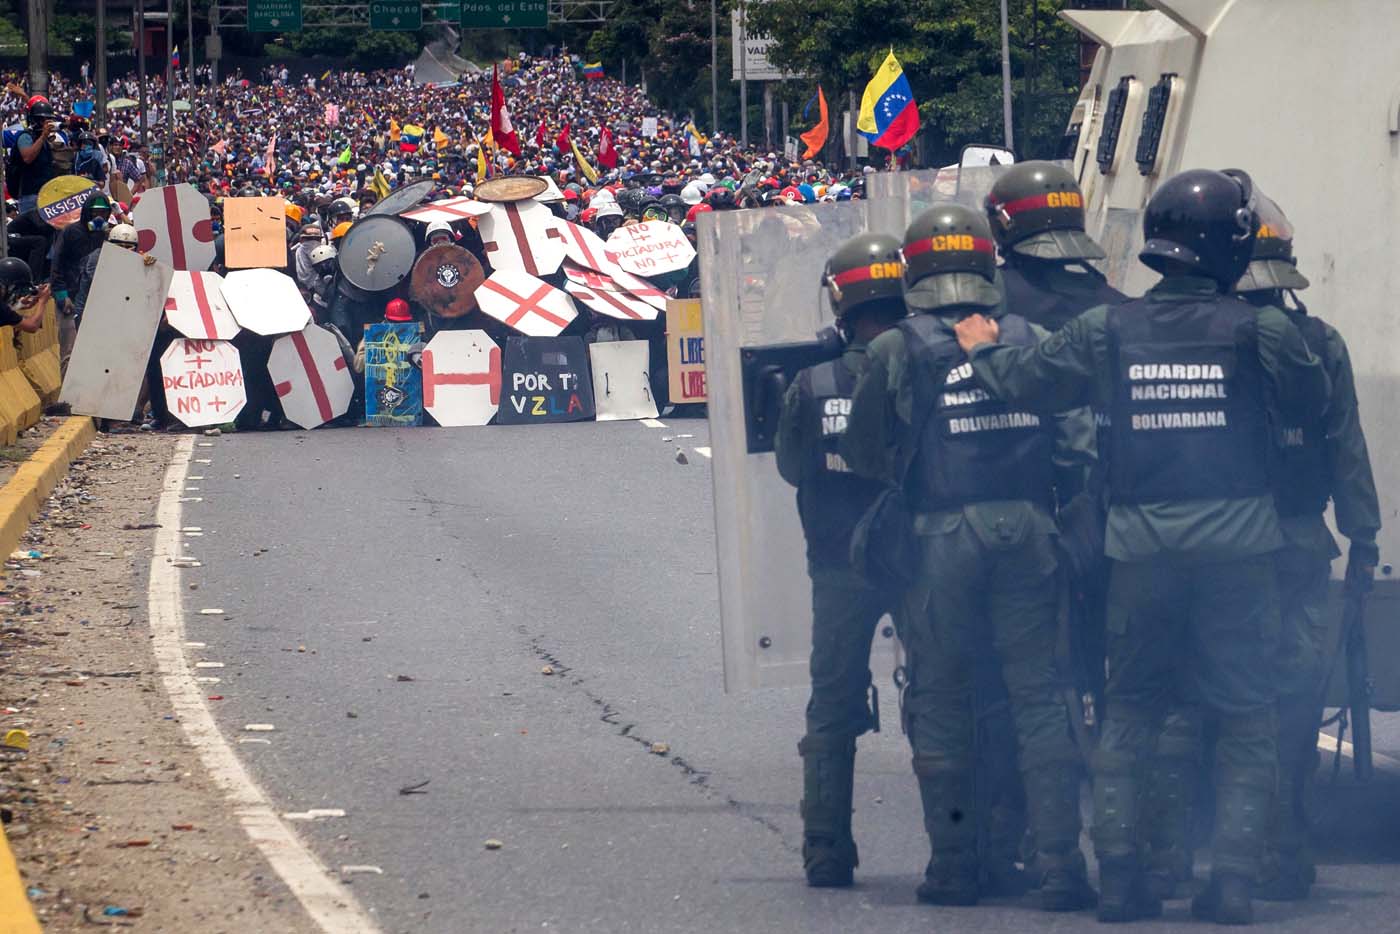 El País: La oposición del futuro en Venezuela está en la calle